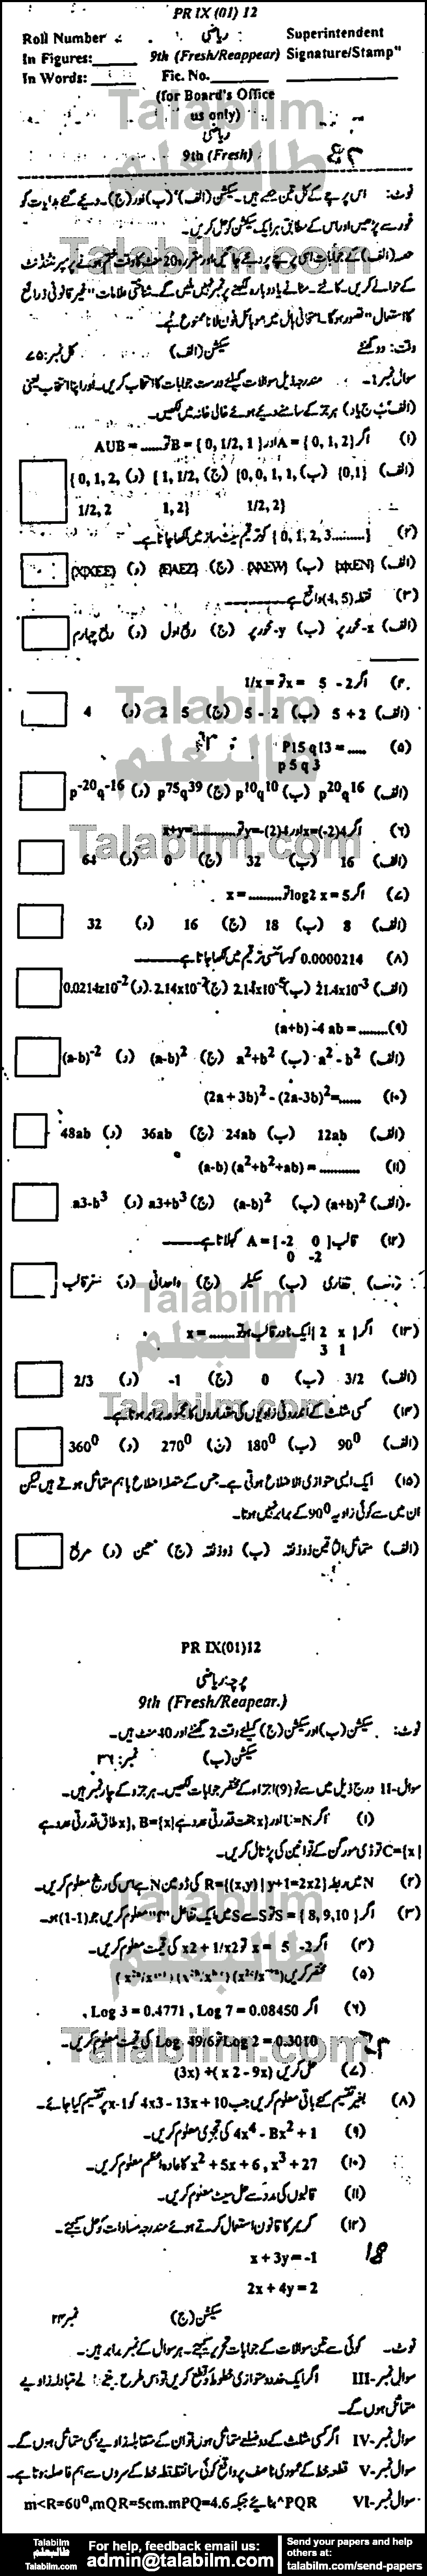 Math 0 past paper for Urdu Medium 2012 Group-I